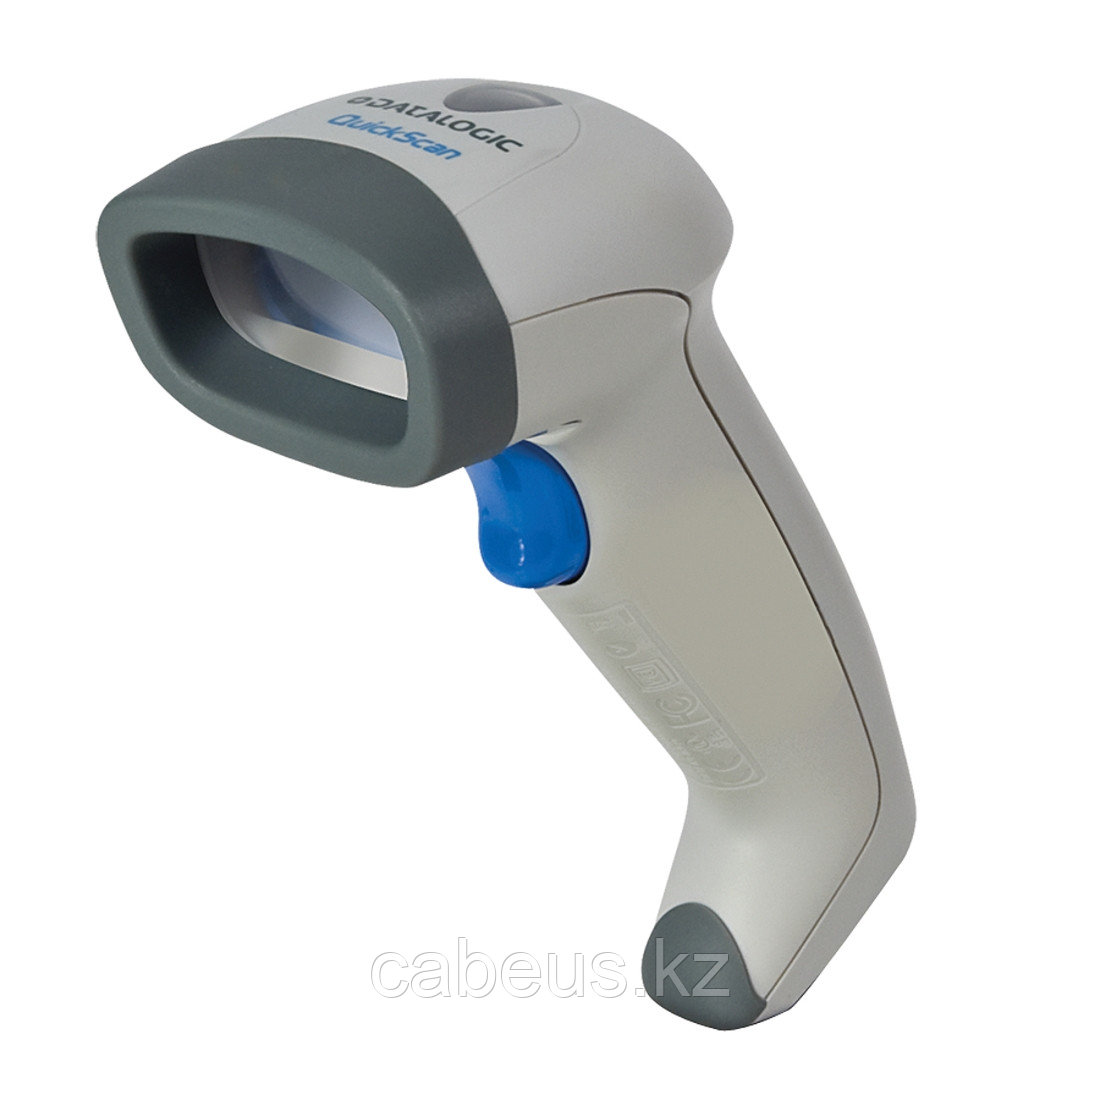 Ручной сканер штрих-кода Datalogic QD2130-WHK1S